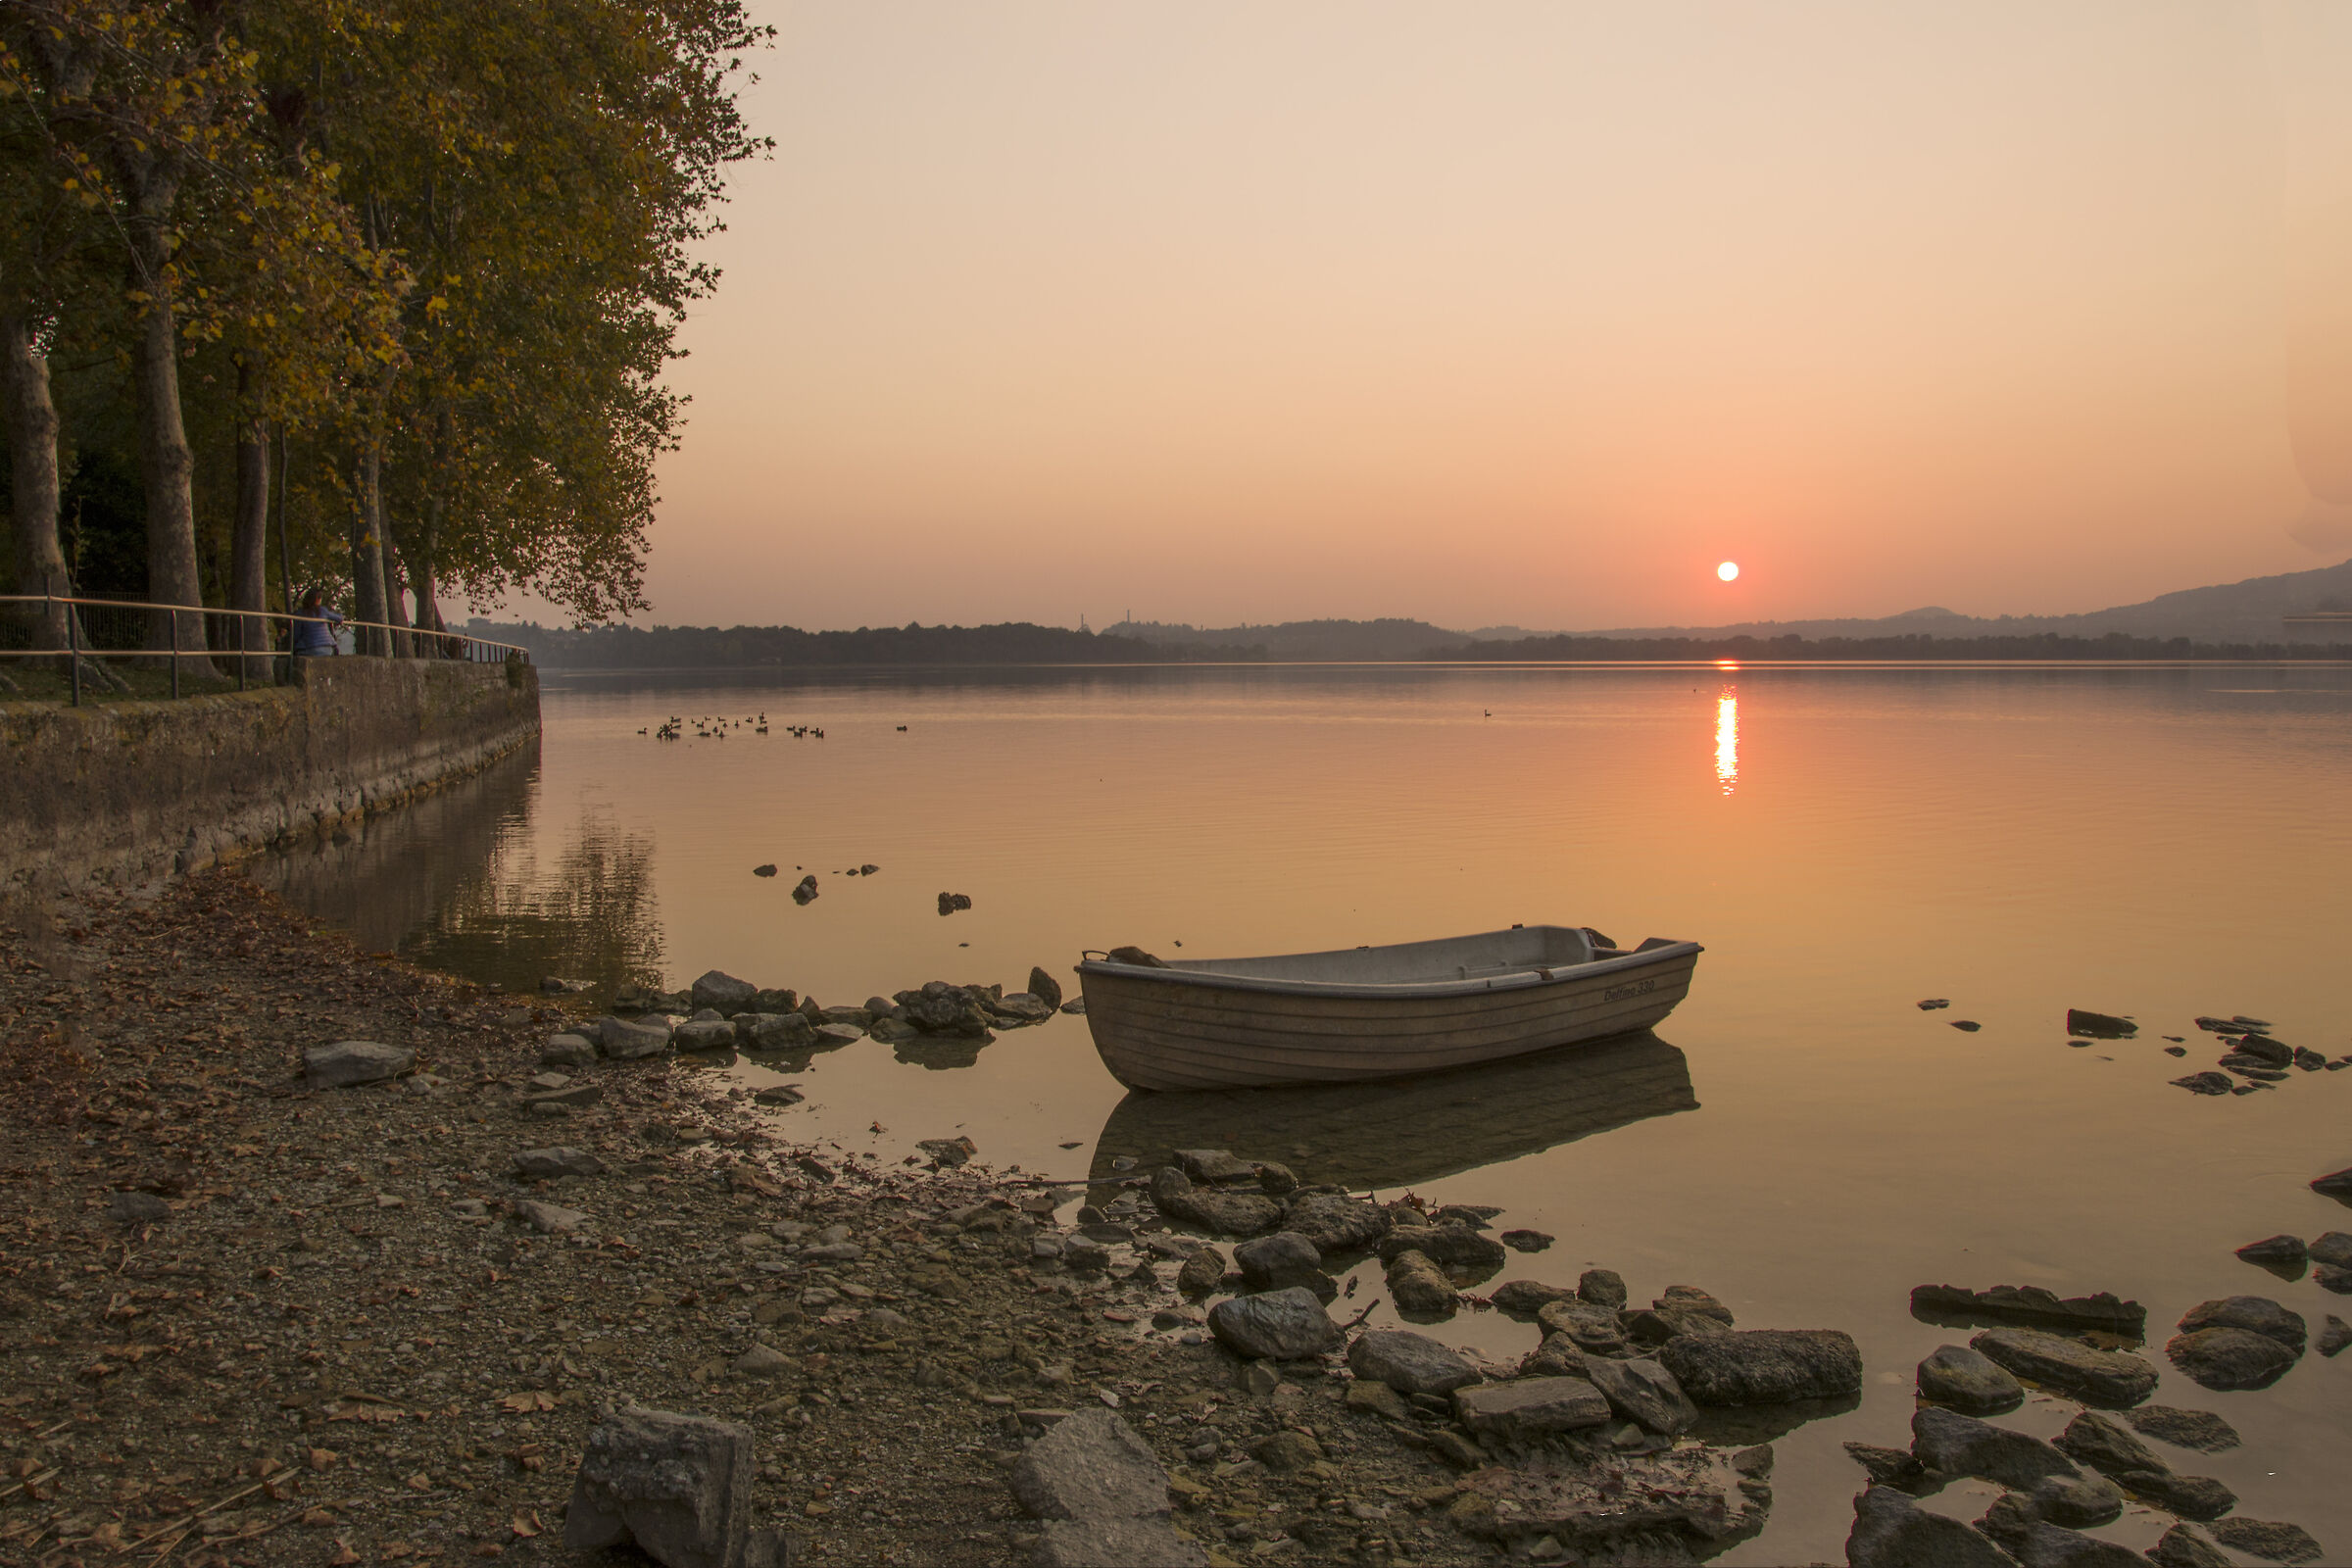 tramonto sul lago di Pusiano...